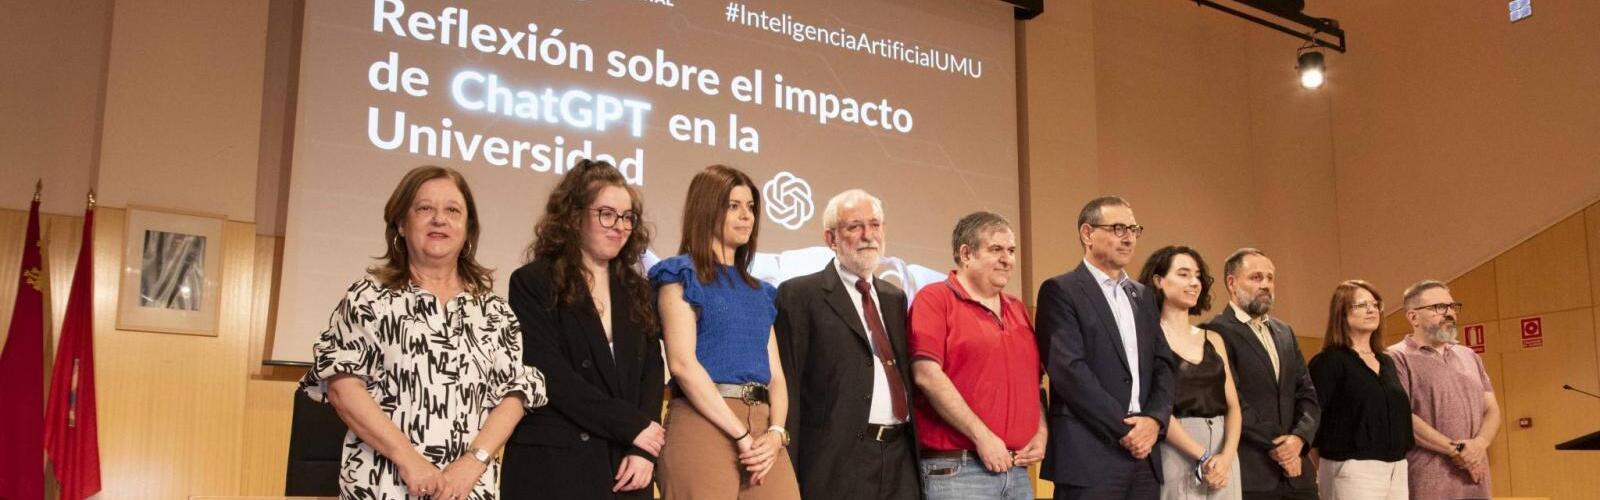 La Universidad de Murcia aborda desde todas las perspectivas el impacto del ChatGPT y la Inteligencia Artificial en la enseñanza superior